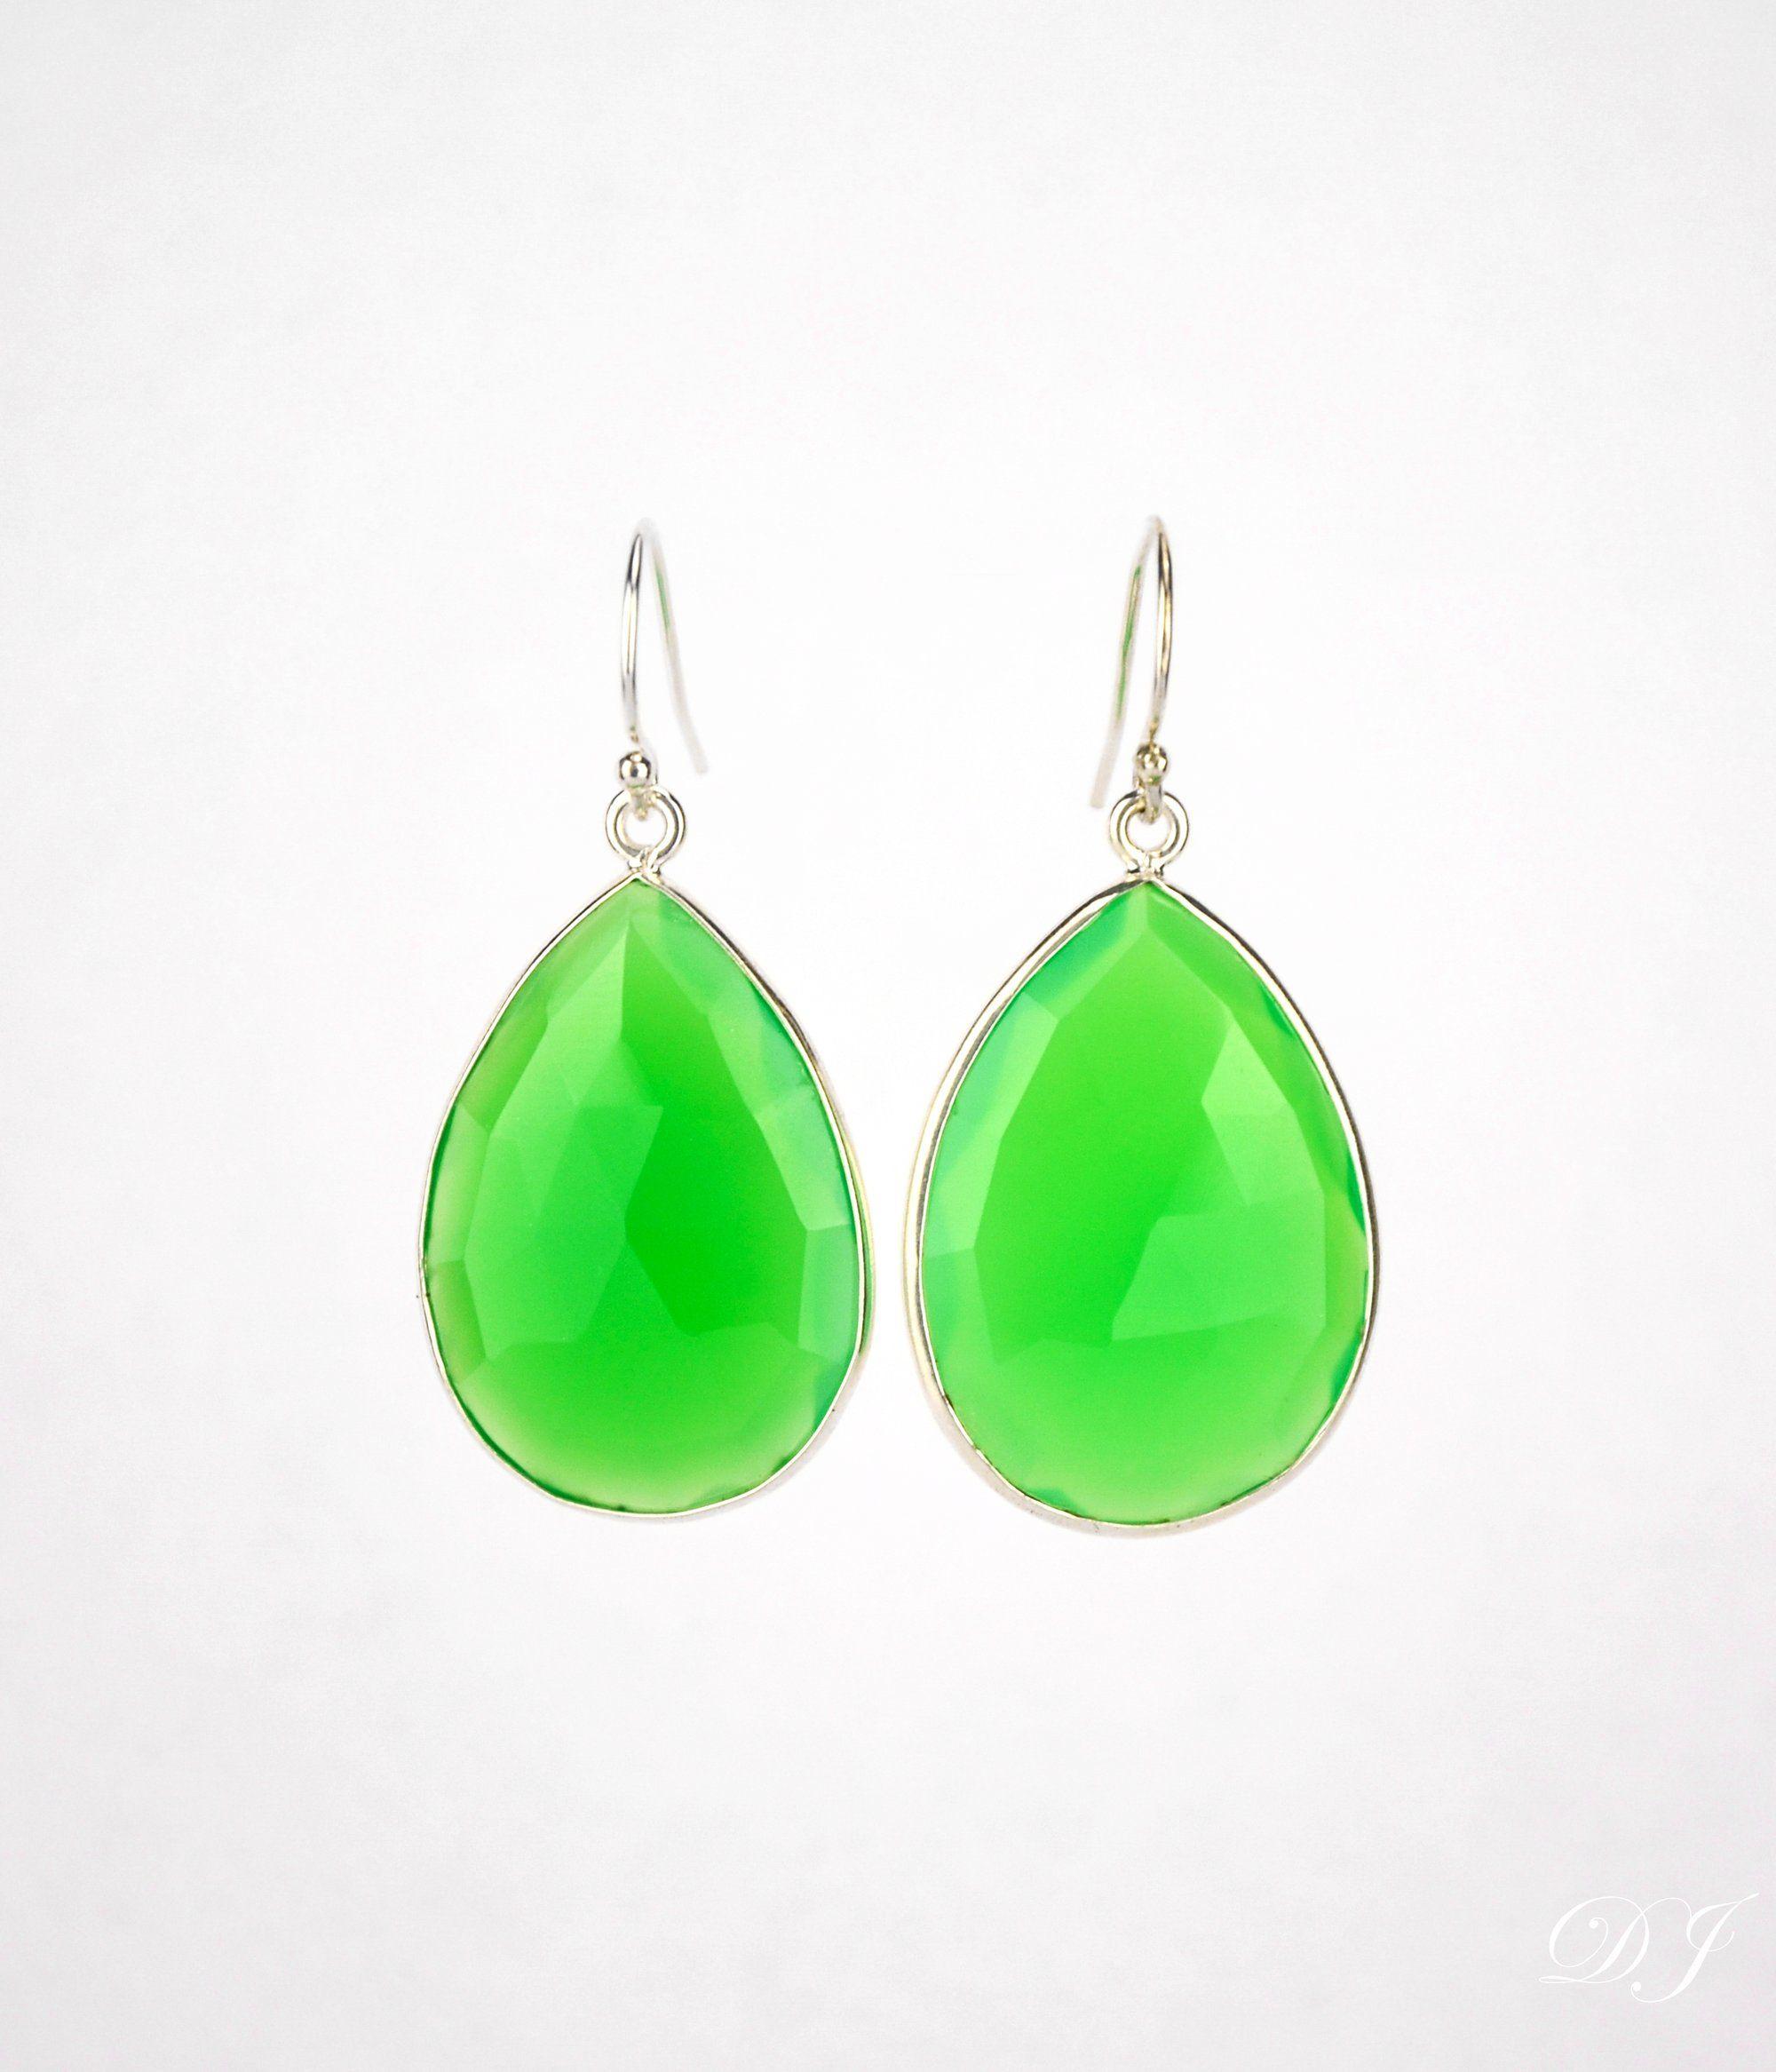 Green Teardrop and Triangle Logo - Faceted Green Chalcedony Teardrop Bezel Set Earrings - August ...